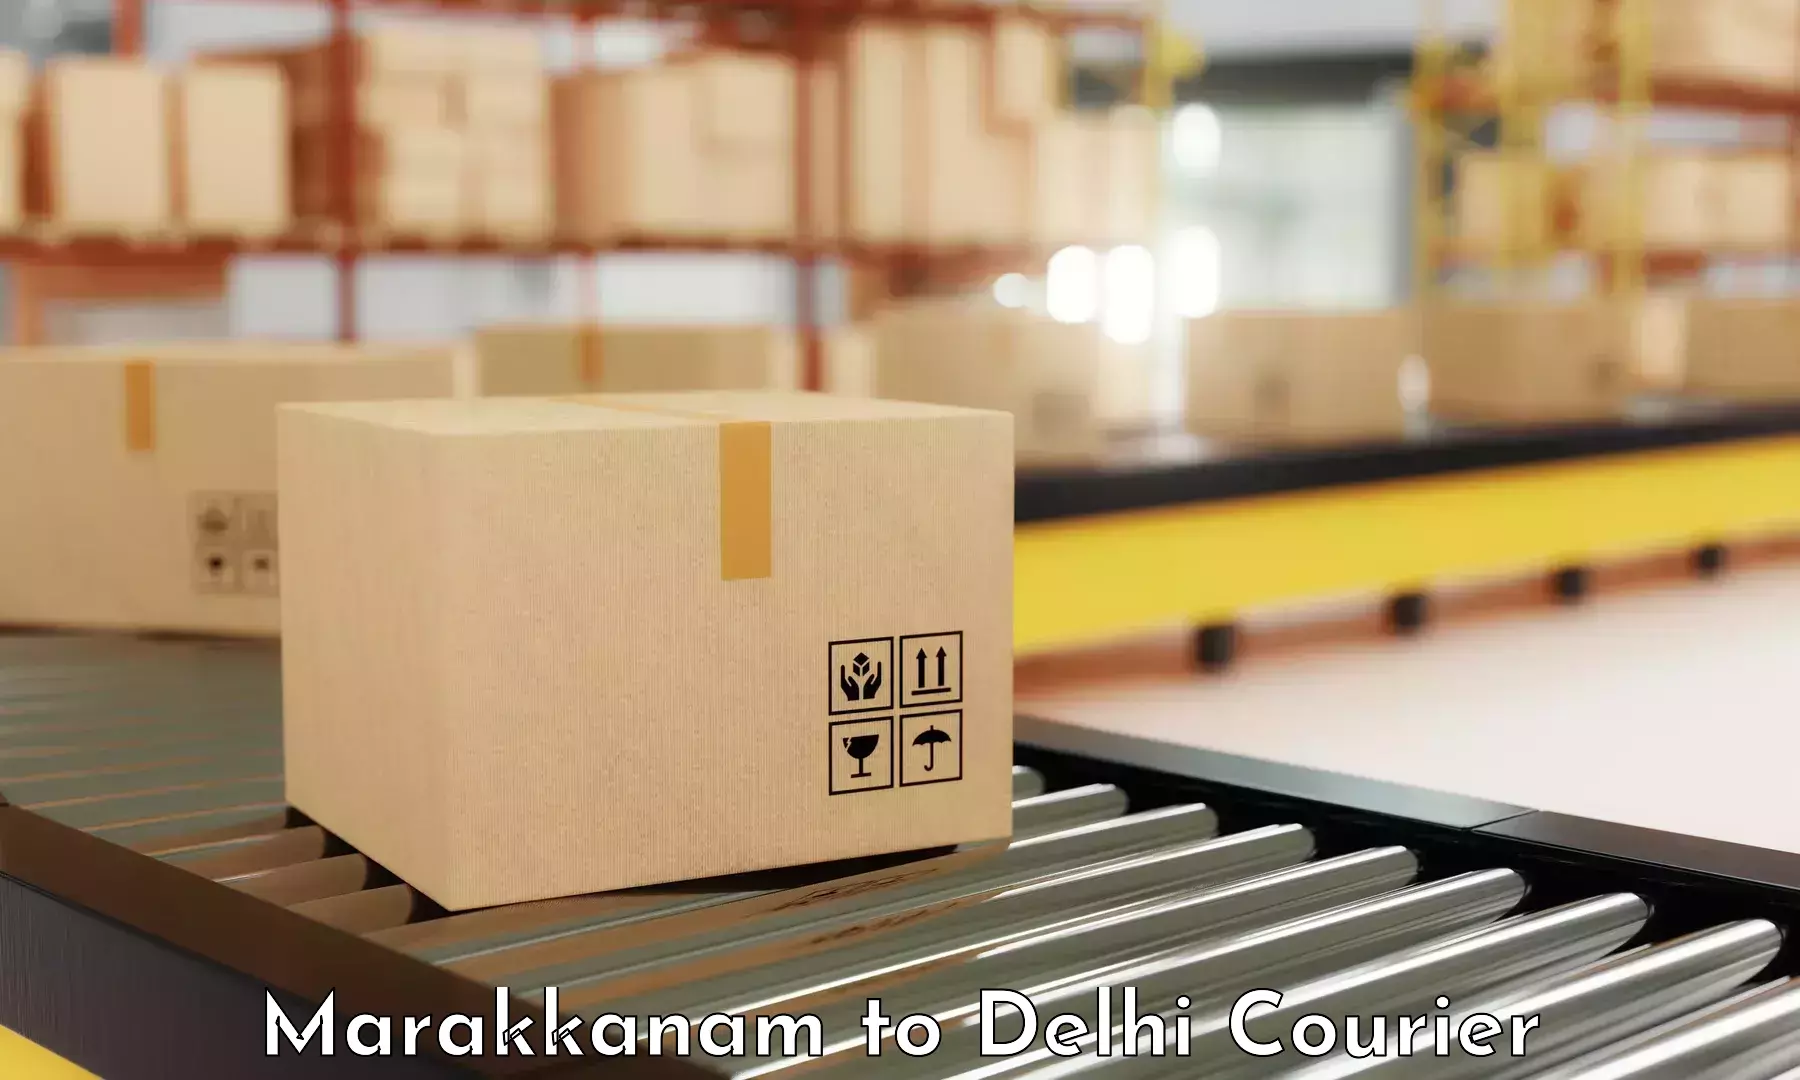 User-friendly courier app Marakkanam to NCR